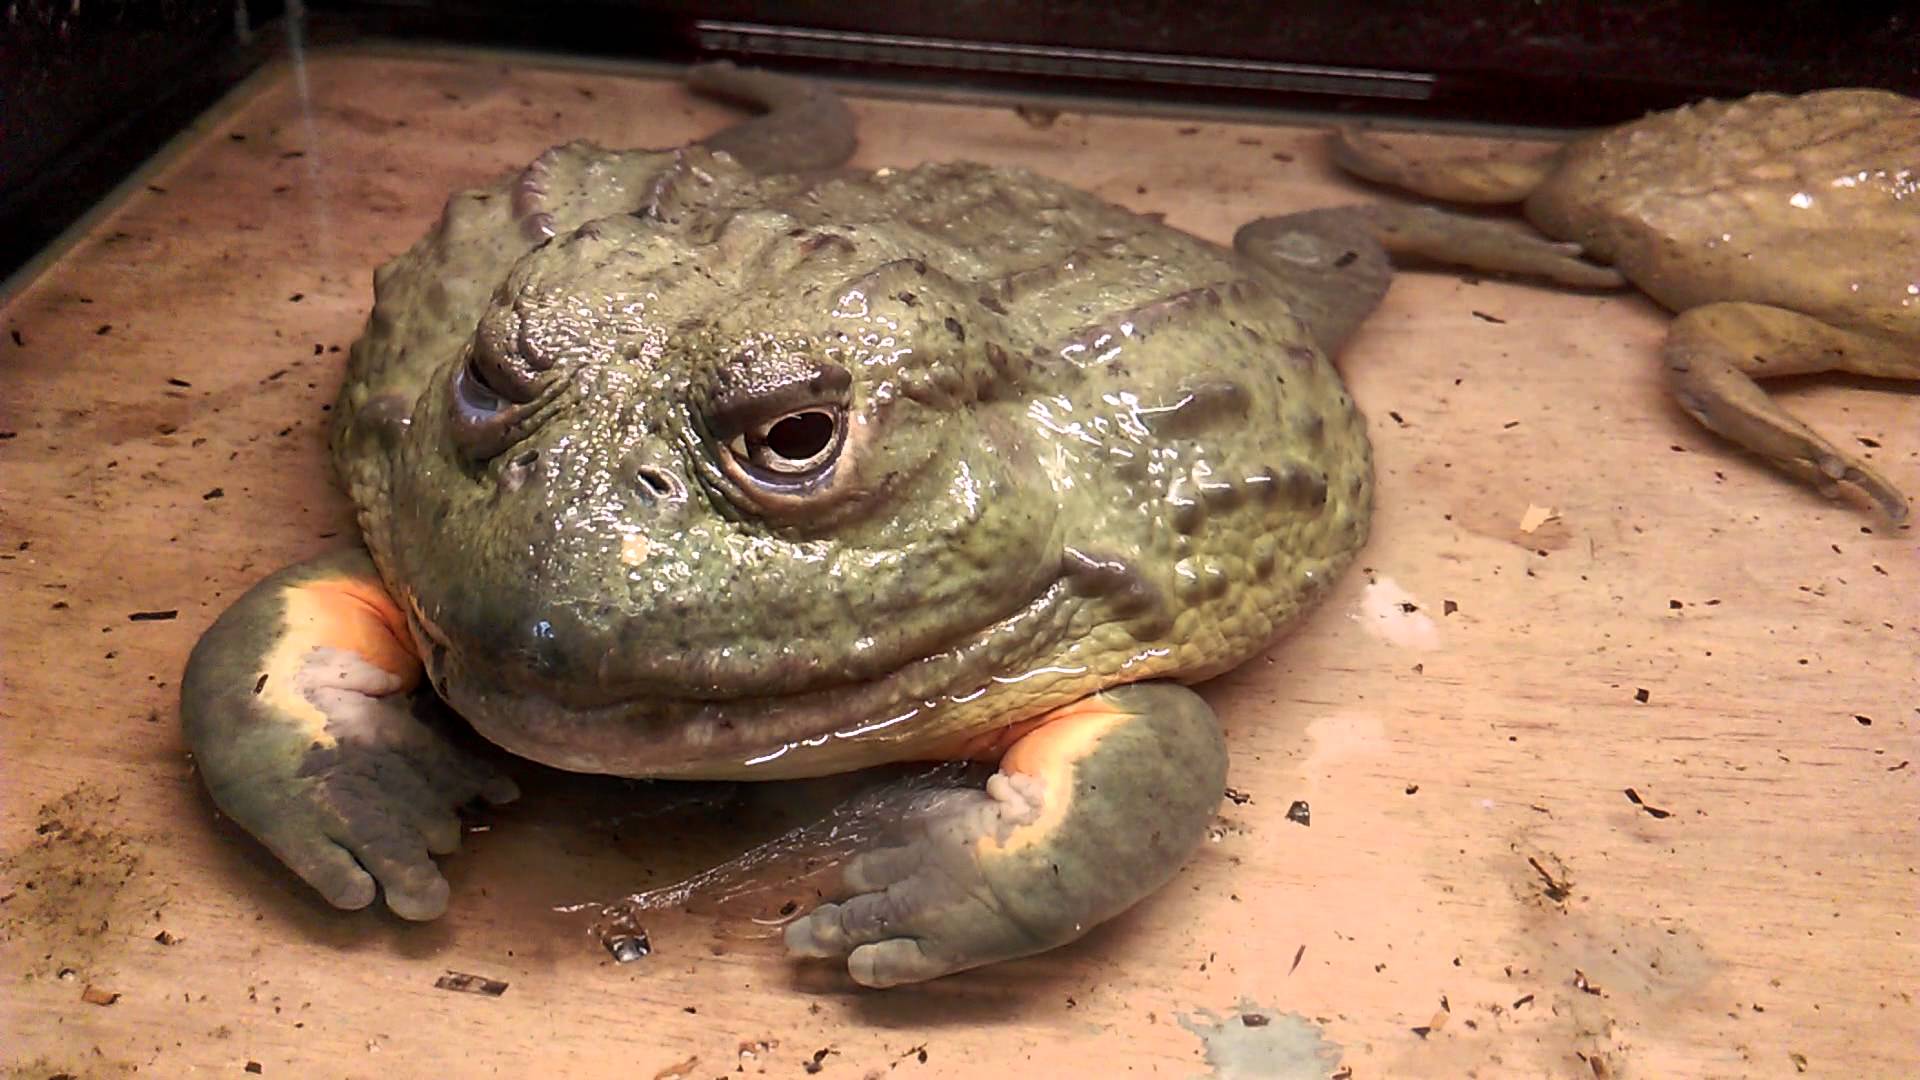 水塘发现野生巨蛙和巨型蝌蚪经市自然博物馆古远博士辨认,证实为牛蛙